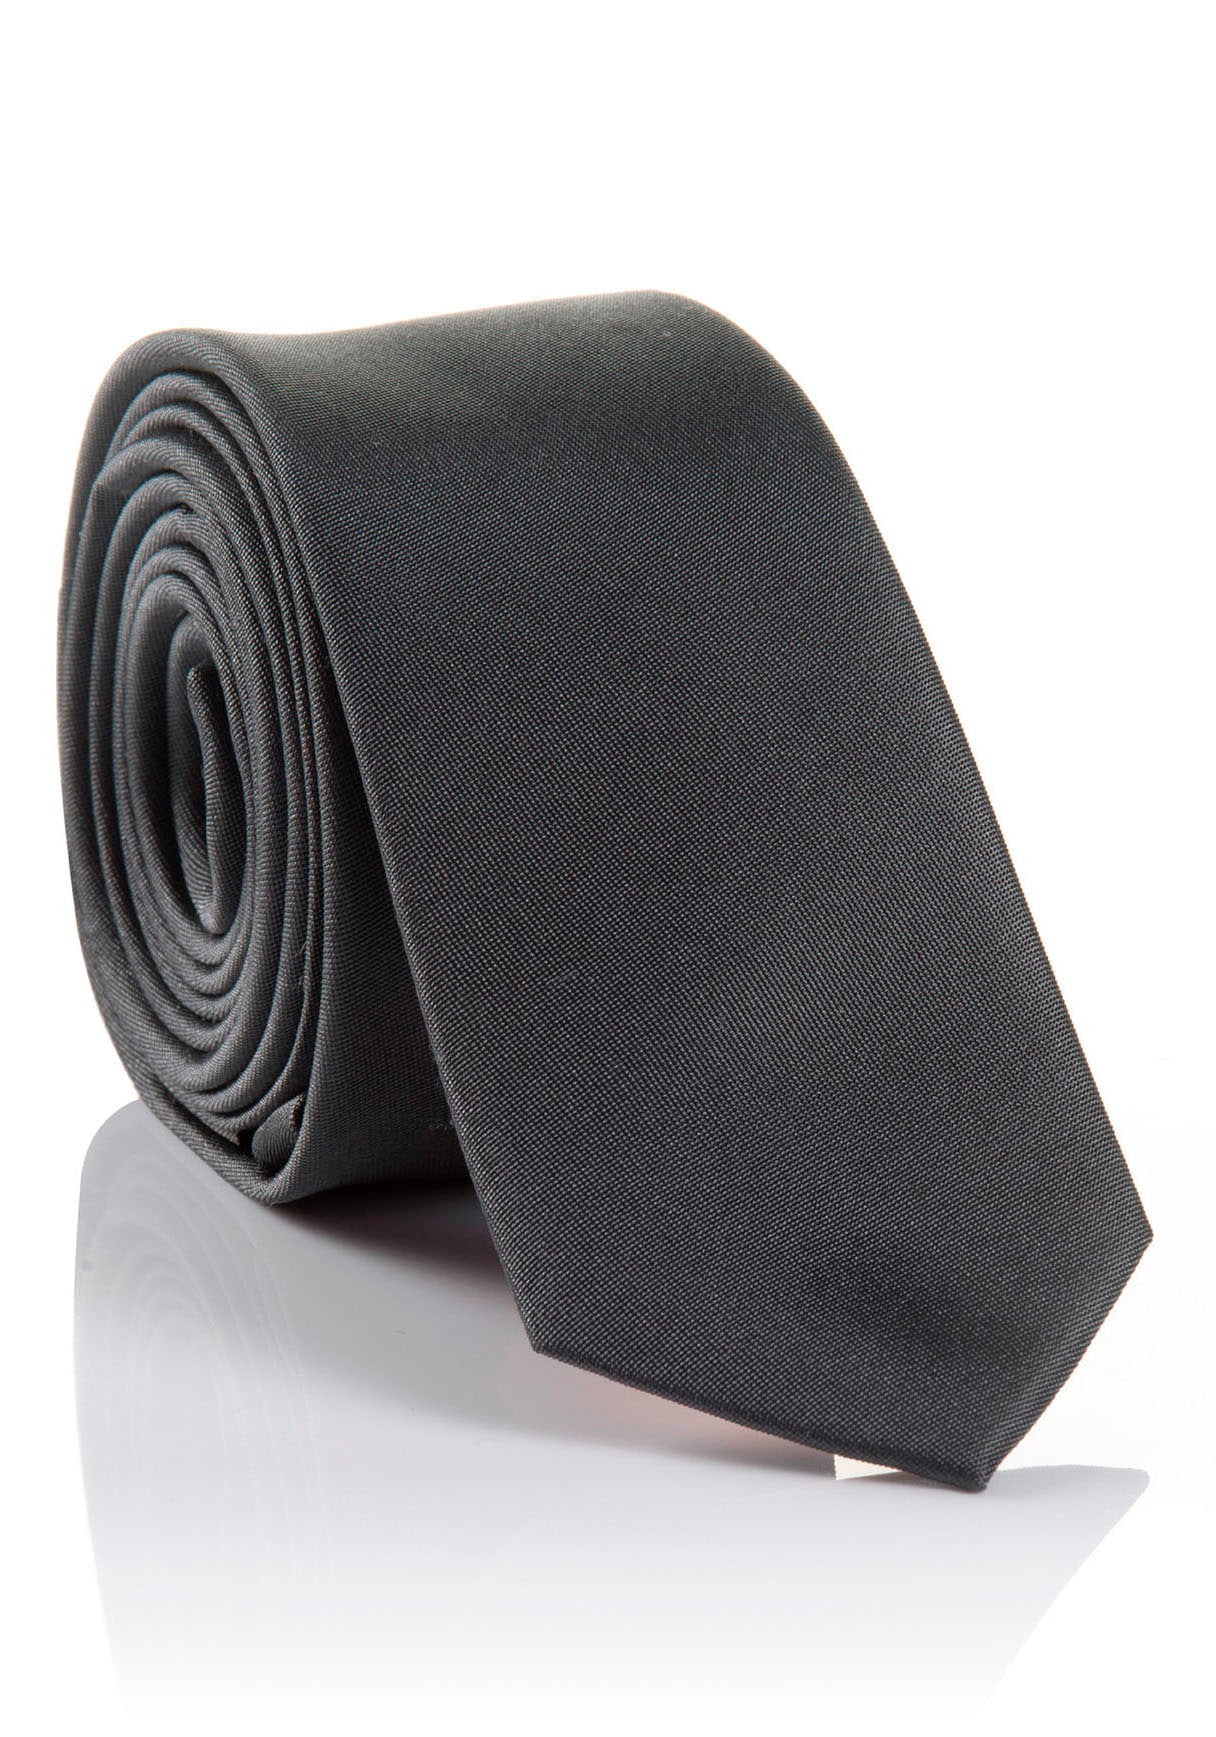 ➤ Krawatten versandkostenfrei - kaufen ohne Mindestbestellwert